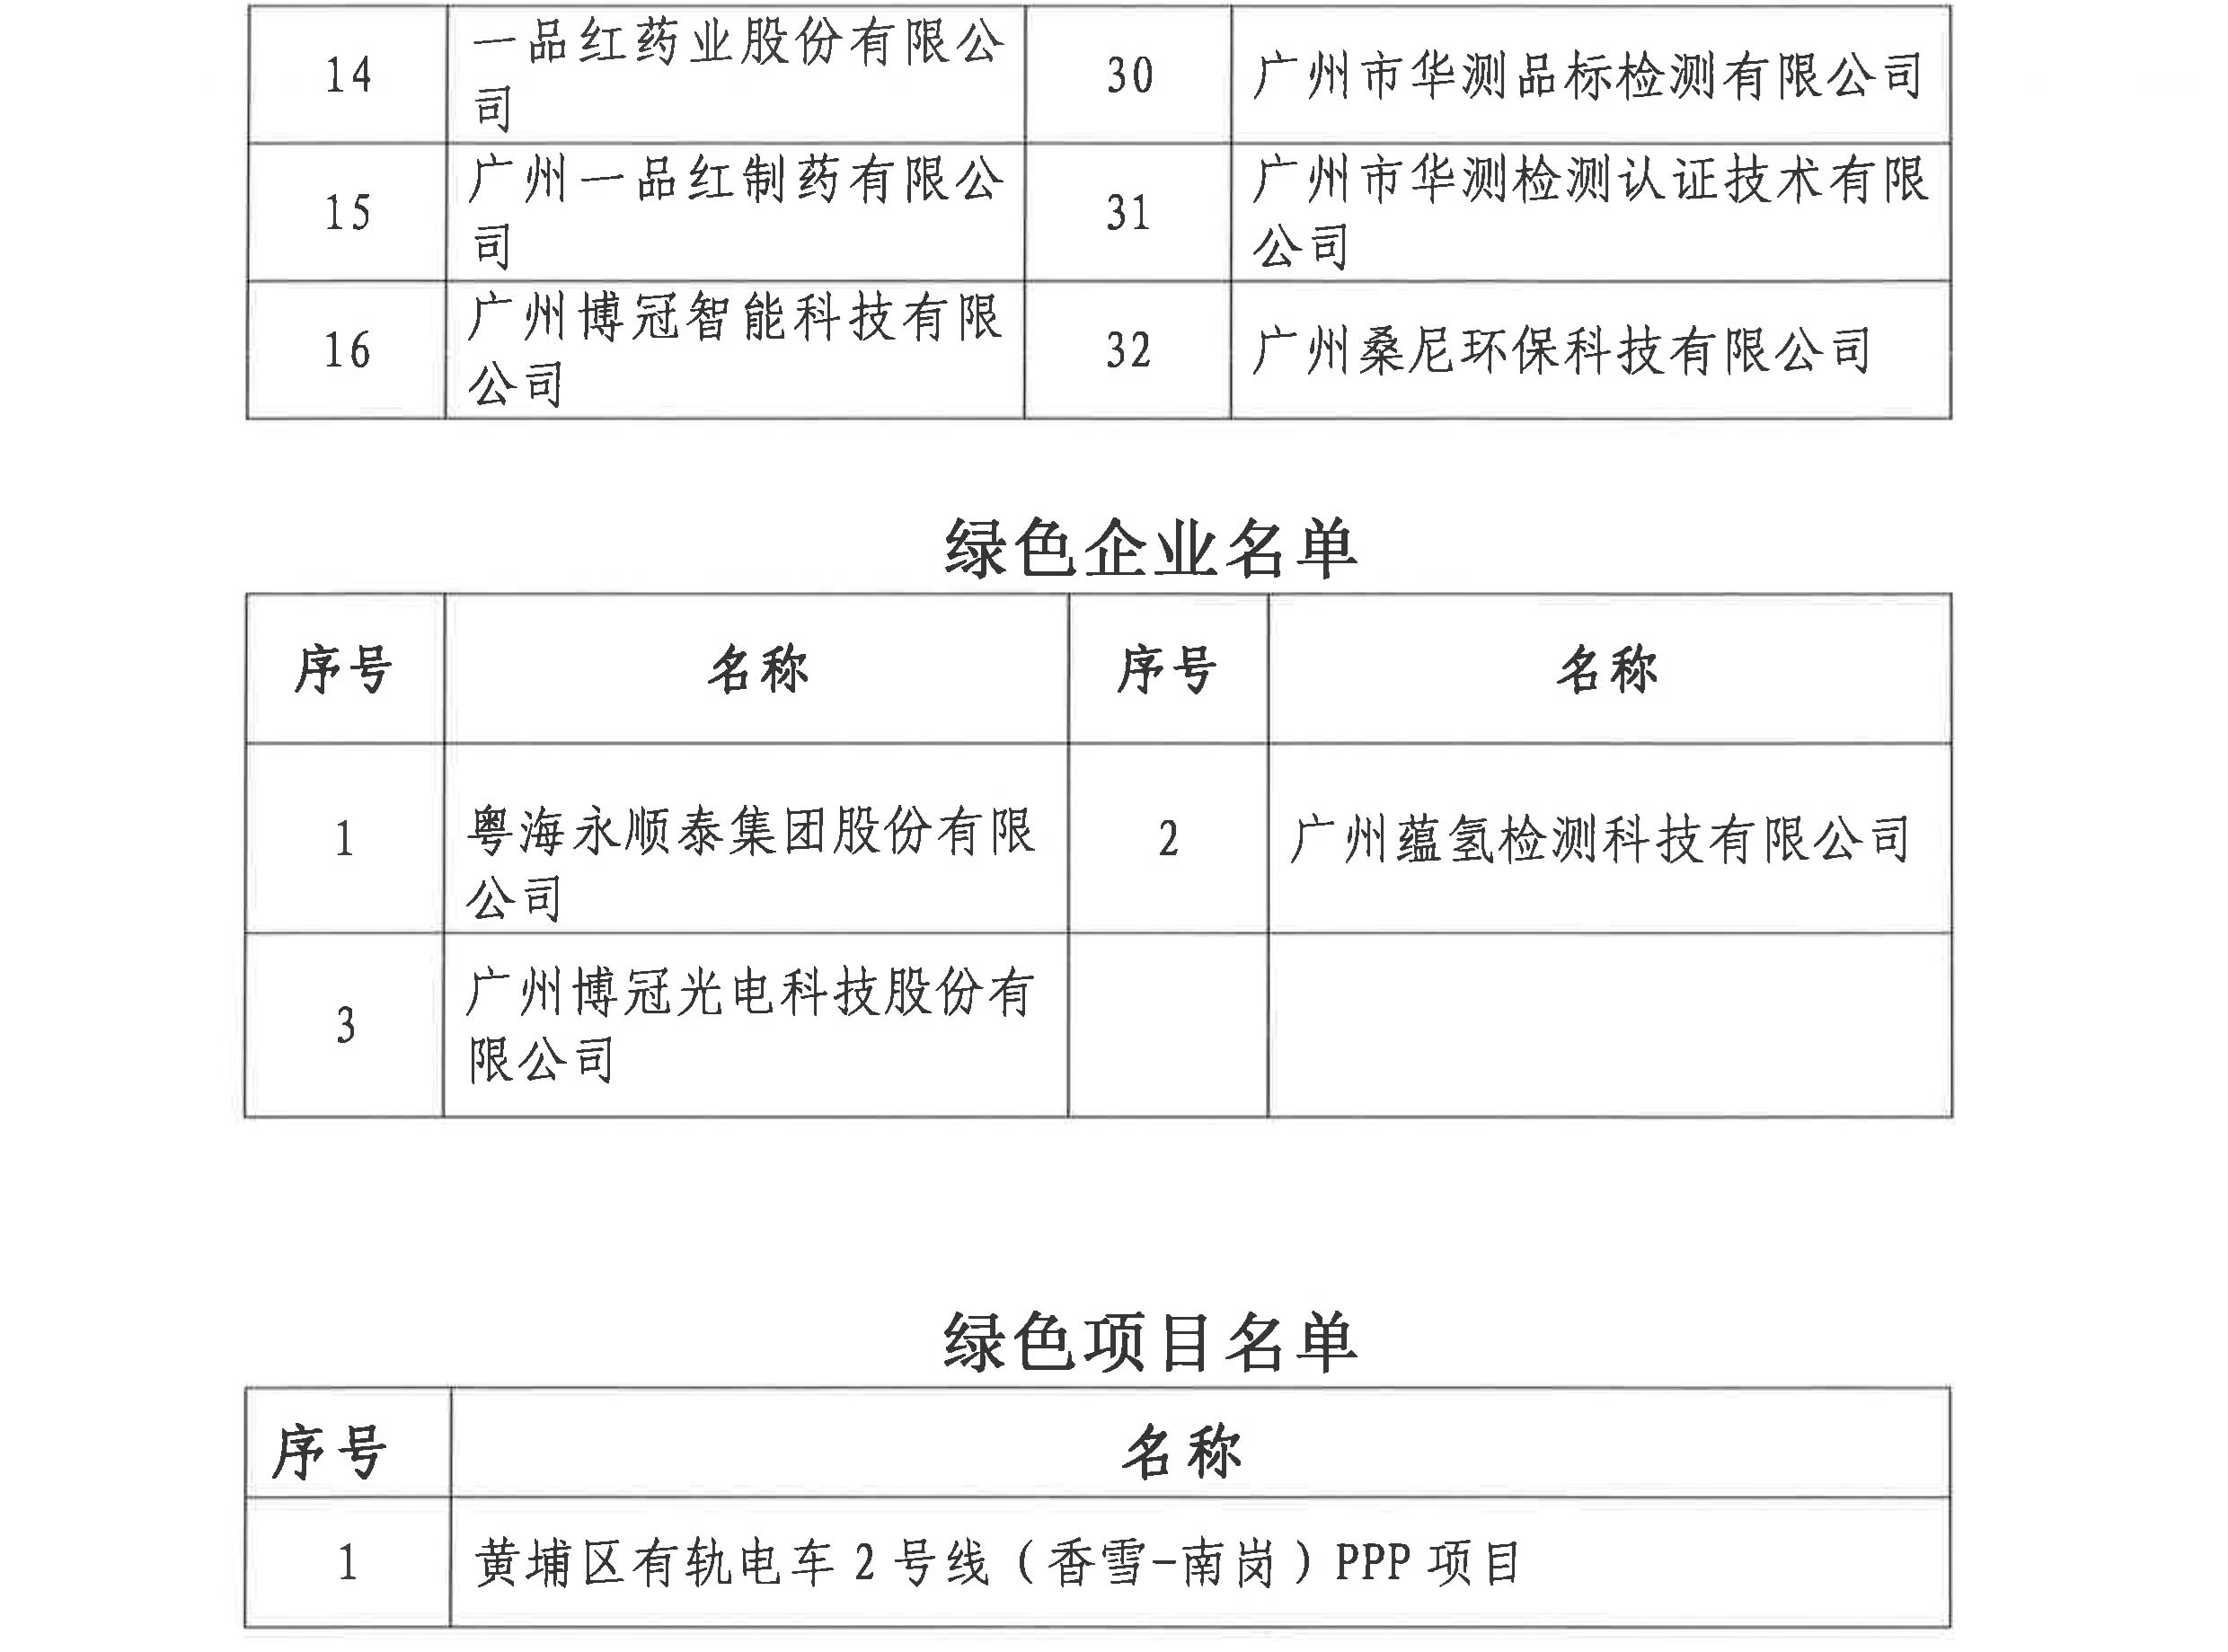 关于公布黄埔区、广州开发区第二批“绿+企业”、绿色企业和绿色项目名单的通知_4.jpg